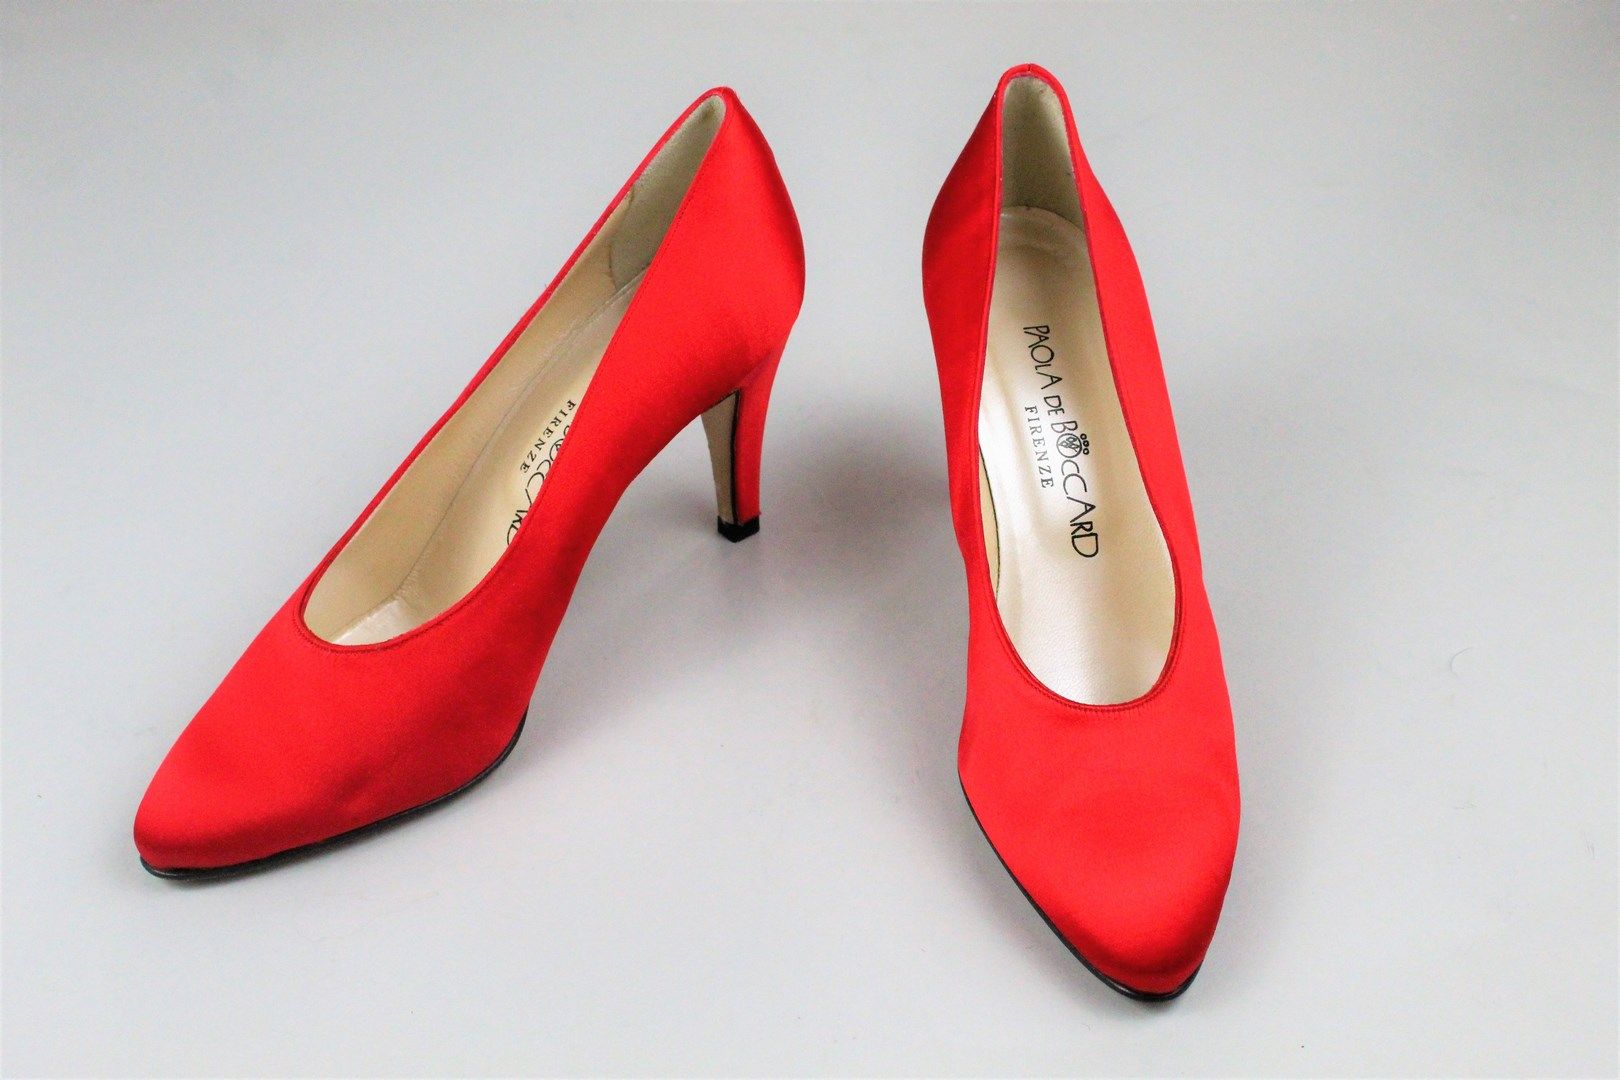 Null 保拉-德-波卡尔



 一双覆盖着红色丝绸的晚装鞋。



鞋跟高度：约8.5厘米。



尺寸：38